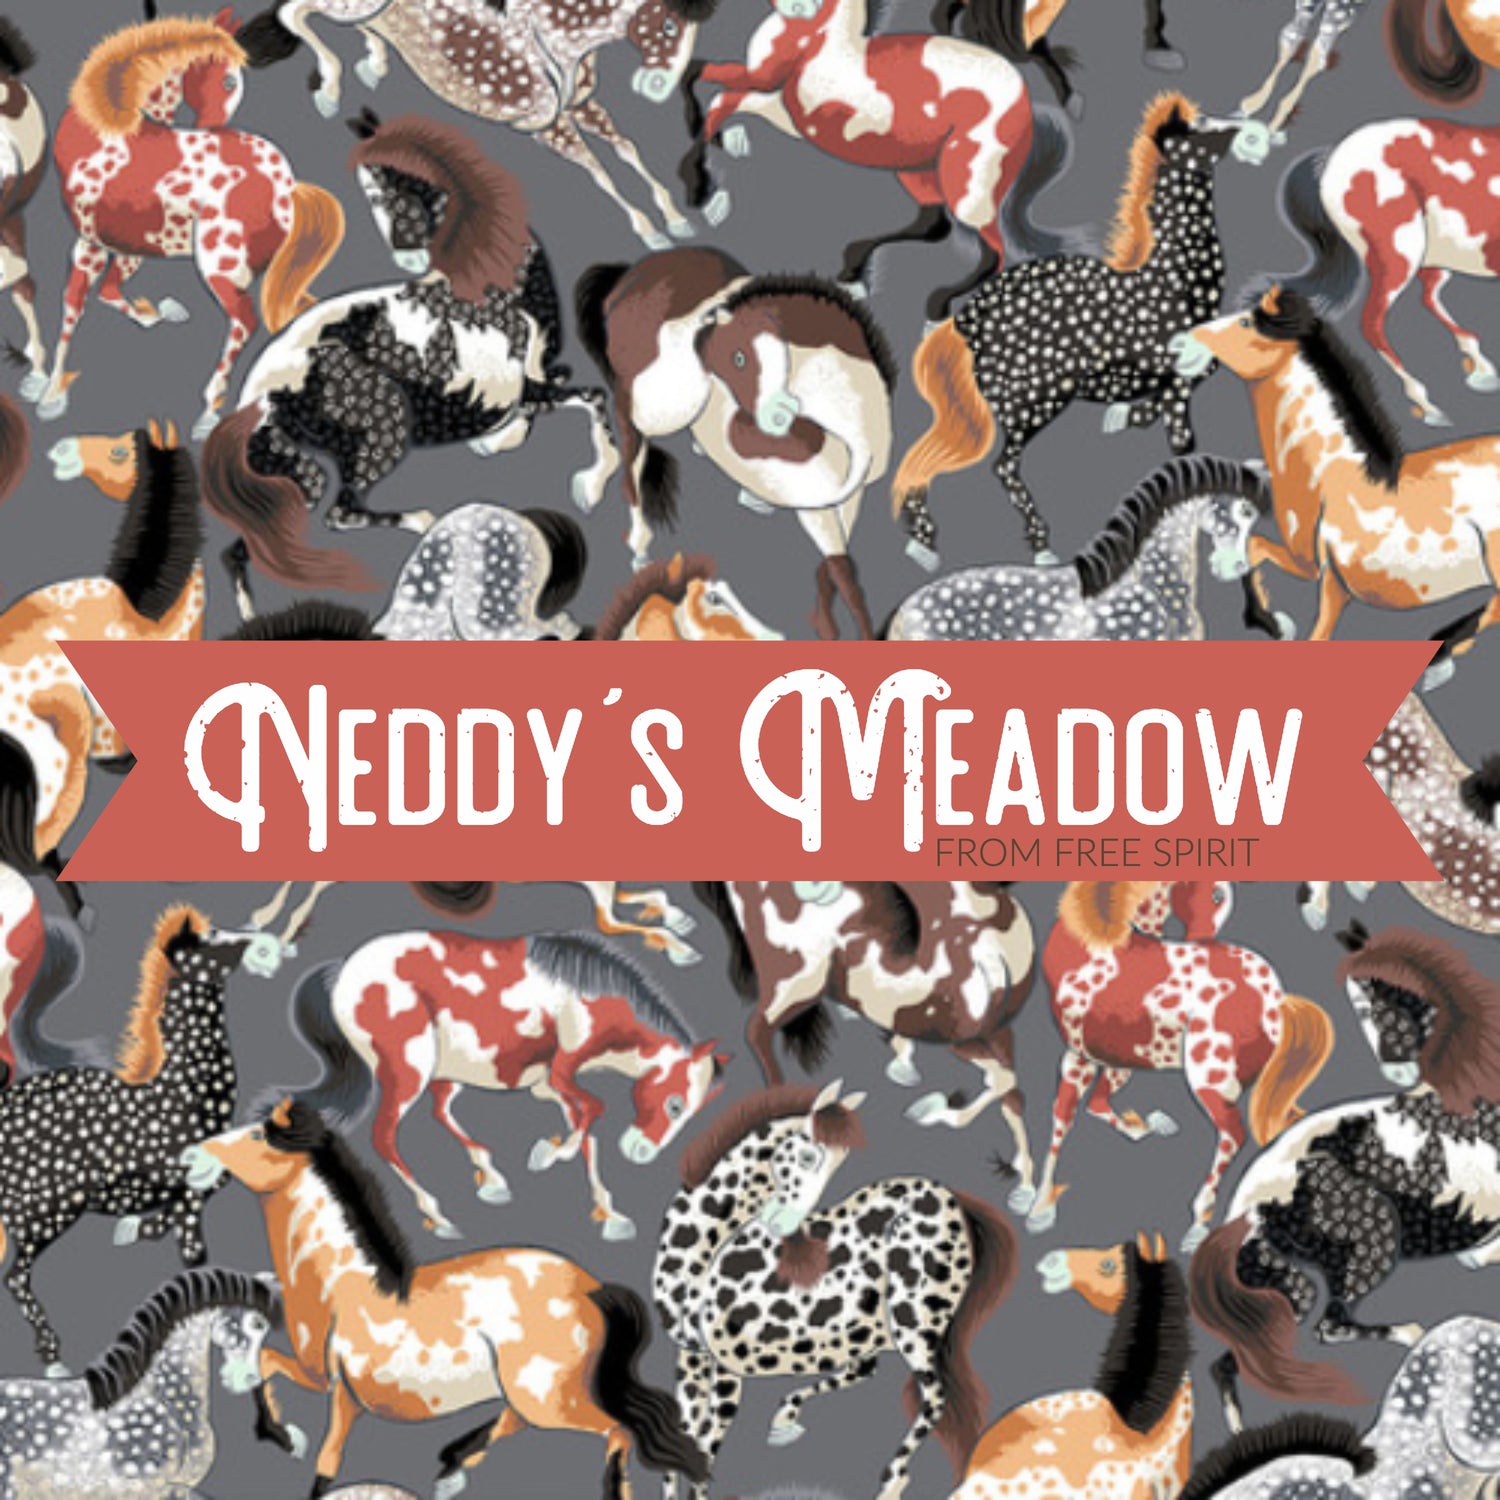 Neddy's Meadow